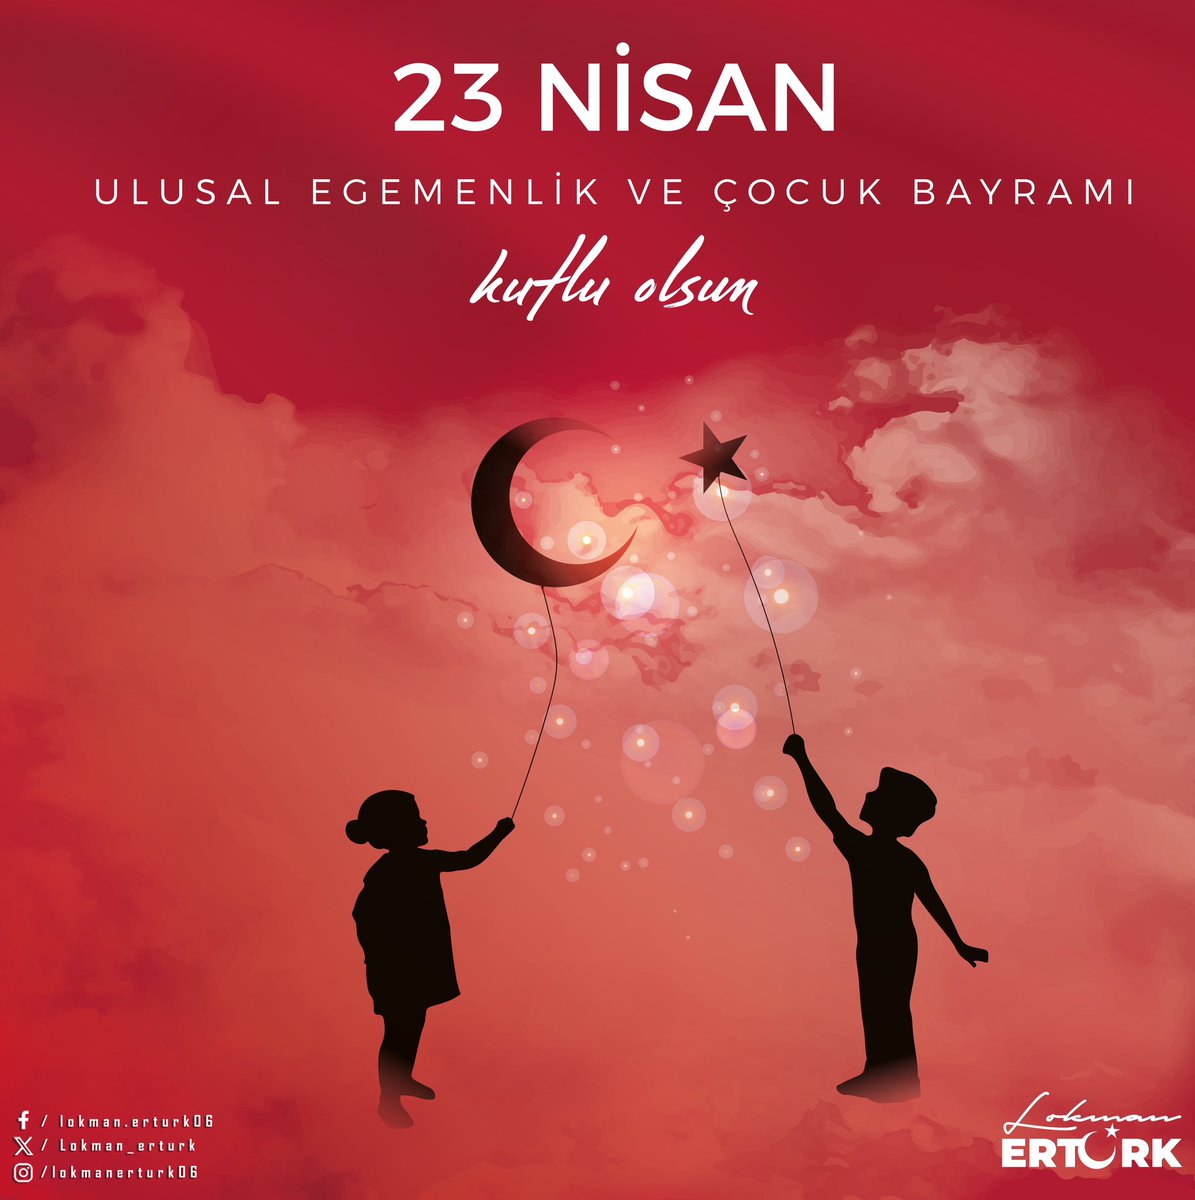 Türkiye Büyük Millet Meclisimizin kuruluşunun 104. yılı ve #23Nisan Ulusal Egemenlik ve Çocuk Bayramımız kutlu olsun.🇹🇷 Cumhuriyetimizin kurucusu Gazi Mustafa Kemal Atatürk’ü, tüm silah arkadaşlarını ve şehitlerimizi rahmetle ve saygıyla anıyorum.